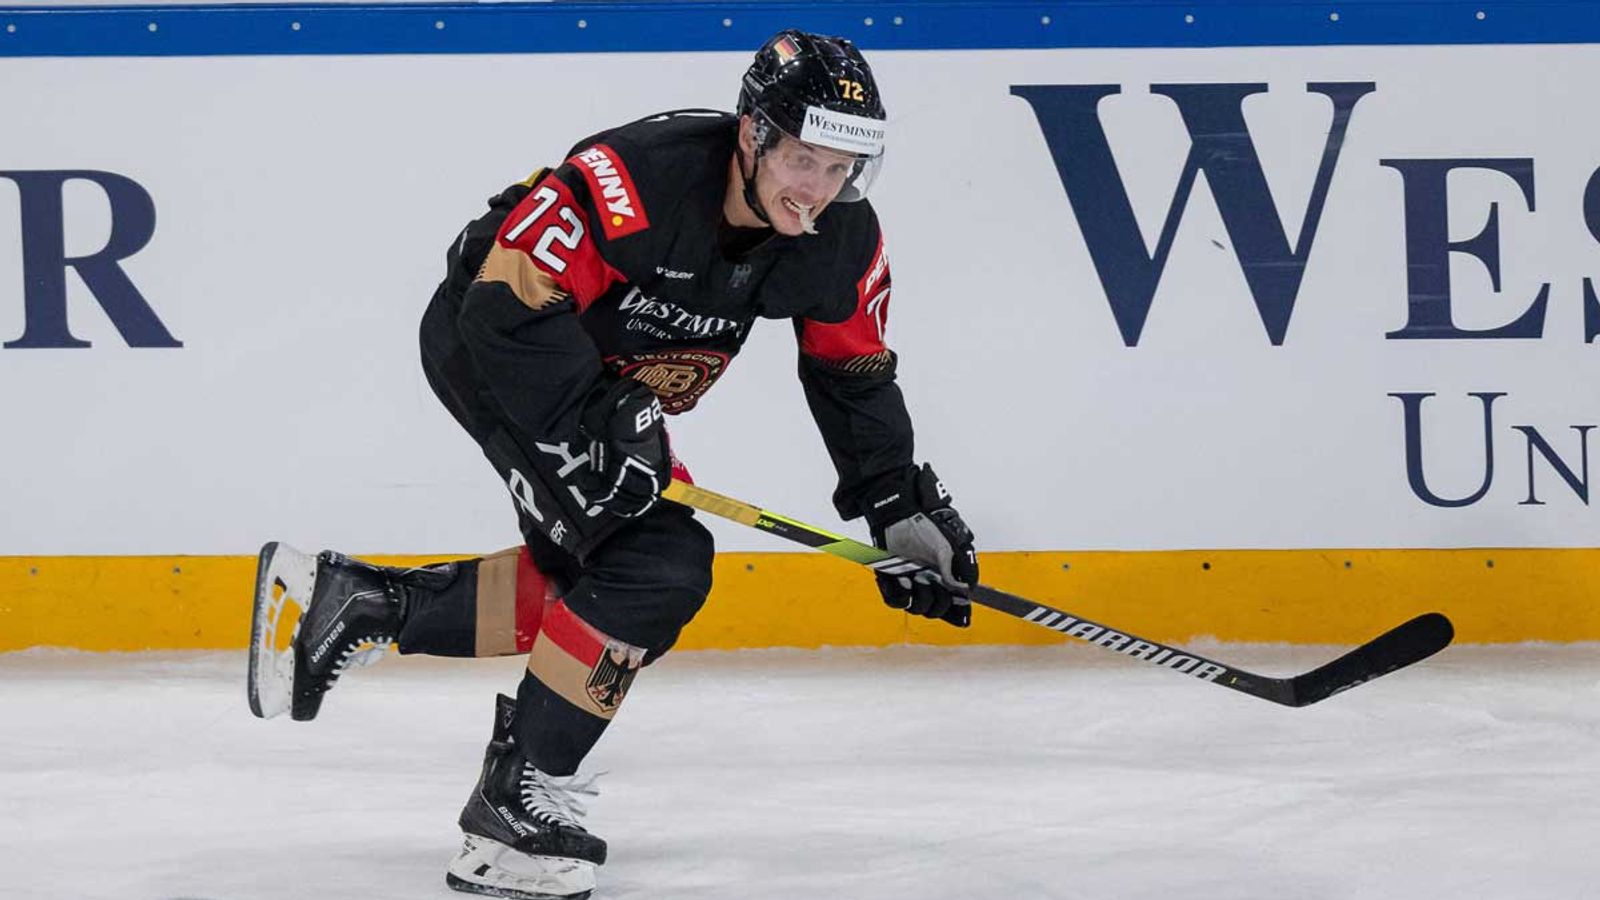 Eishockey Deutschland siegt in der WM-Vorbereitung gegen die Slowakei Eishockey News Sky Sport